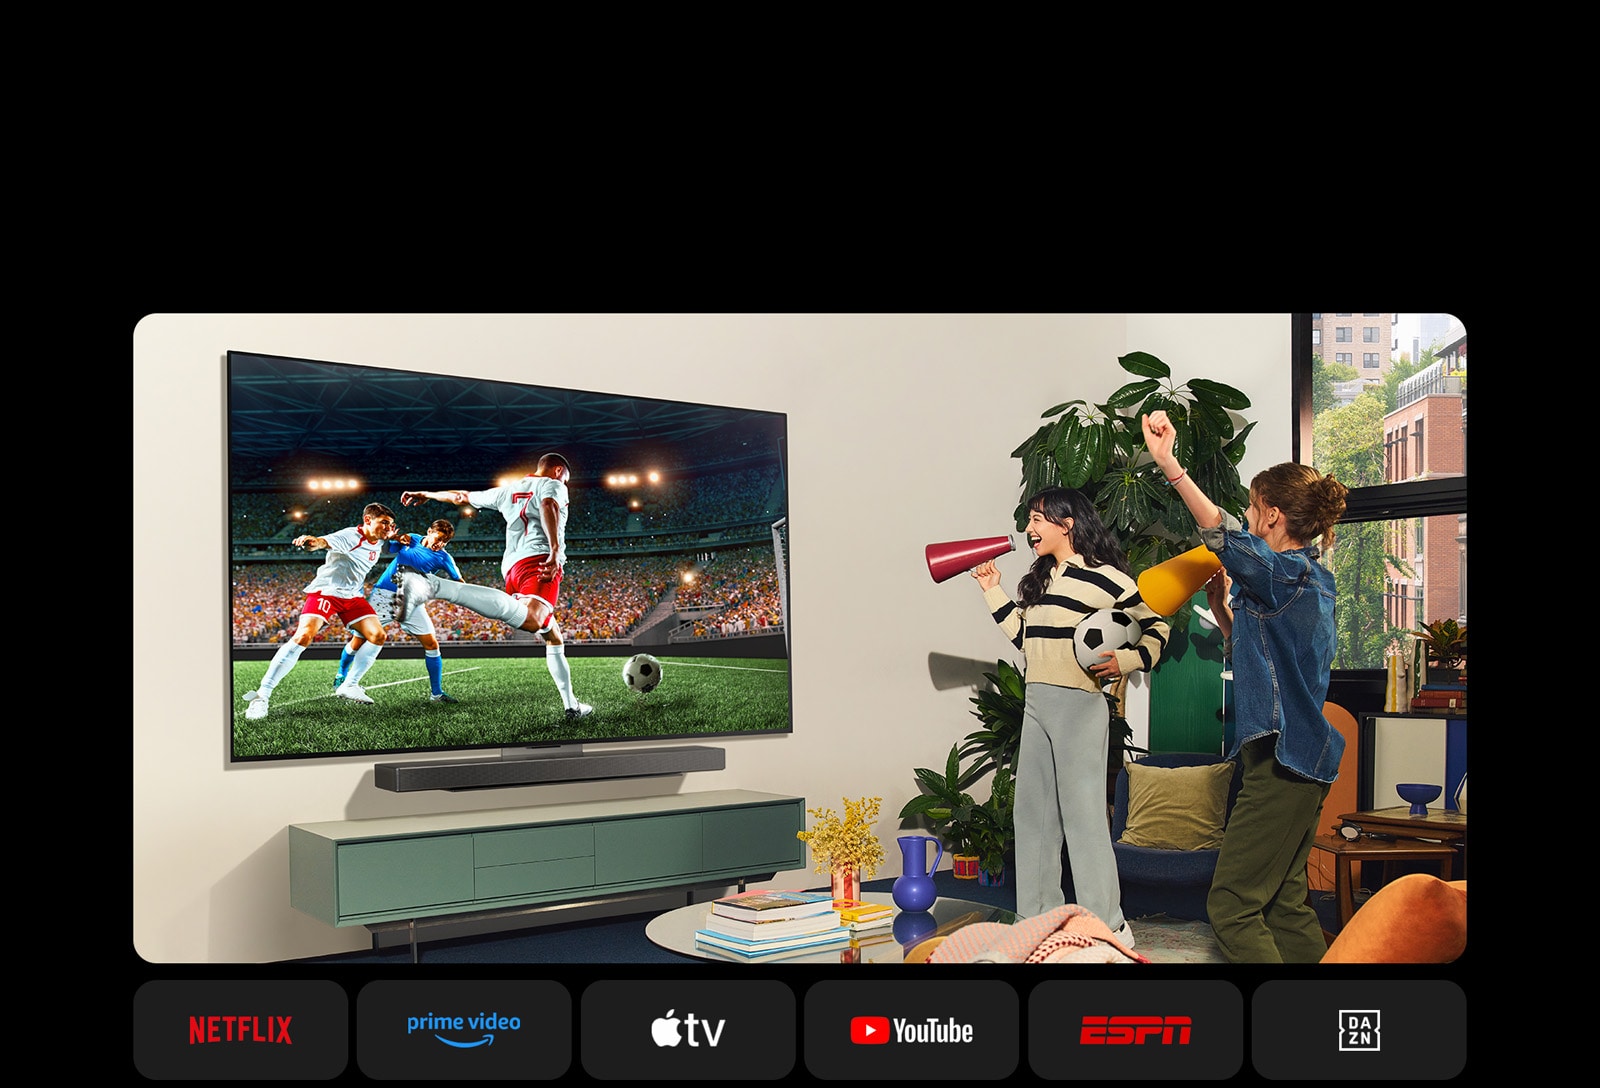 Deux femmes regardent un match de football dans un espace de vie confortable. Une femme tient un ballon de football et toutes deux encouragent leur équipe à l'aide de haut-parleurs jaunes et rouges. Les logos suivants sont présentés ci-dessous. Netflix, Amazon Prime Video, Apple TV, Youtube, ESPN et DAZN.